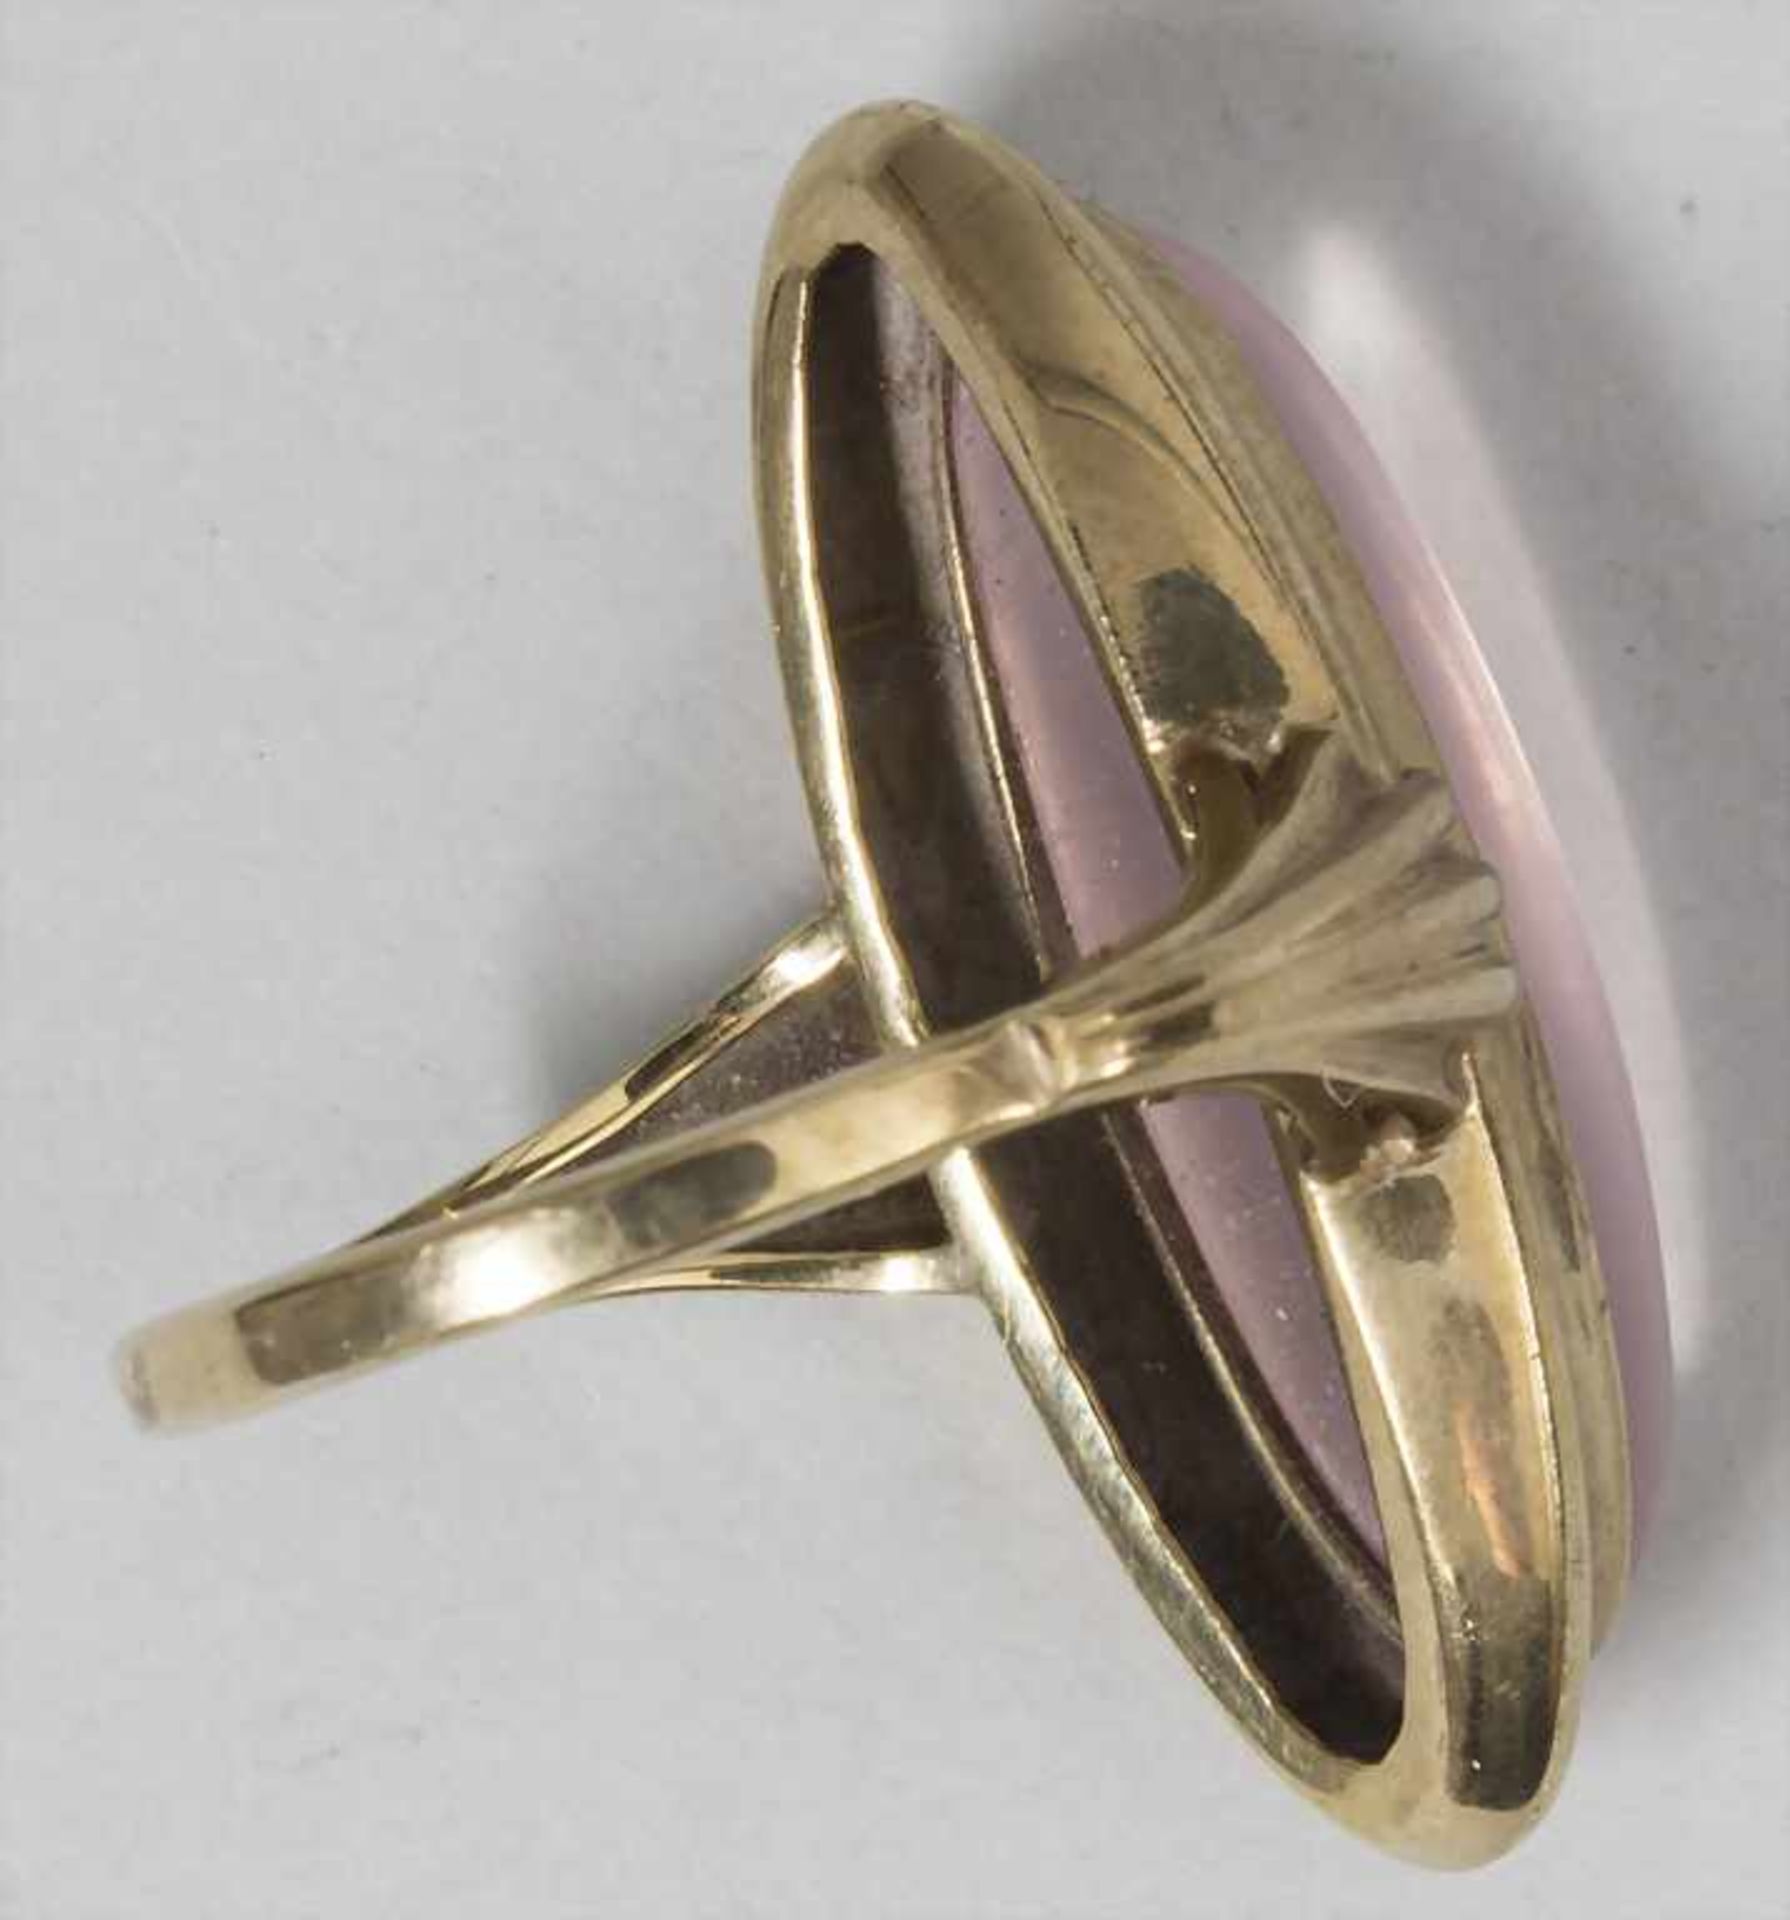 Damenring mit Rosenquarz / A ladies ring with rose quartz - Image 3 of 3